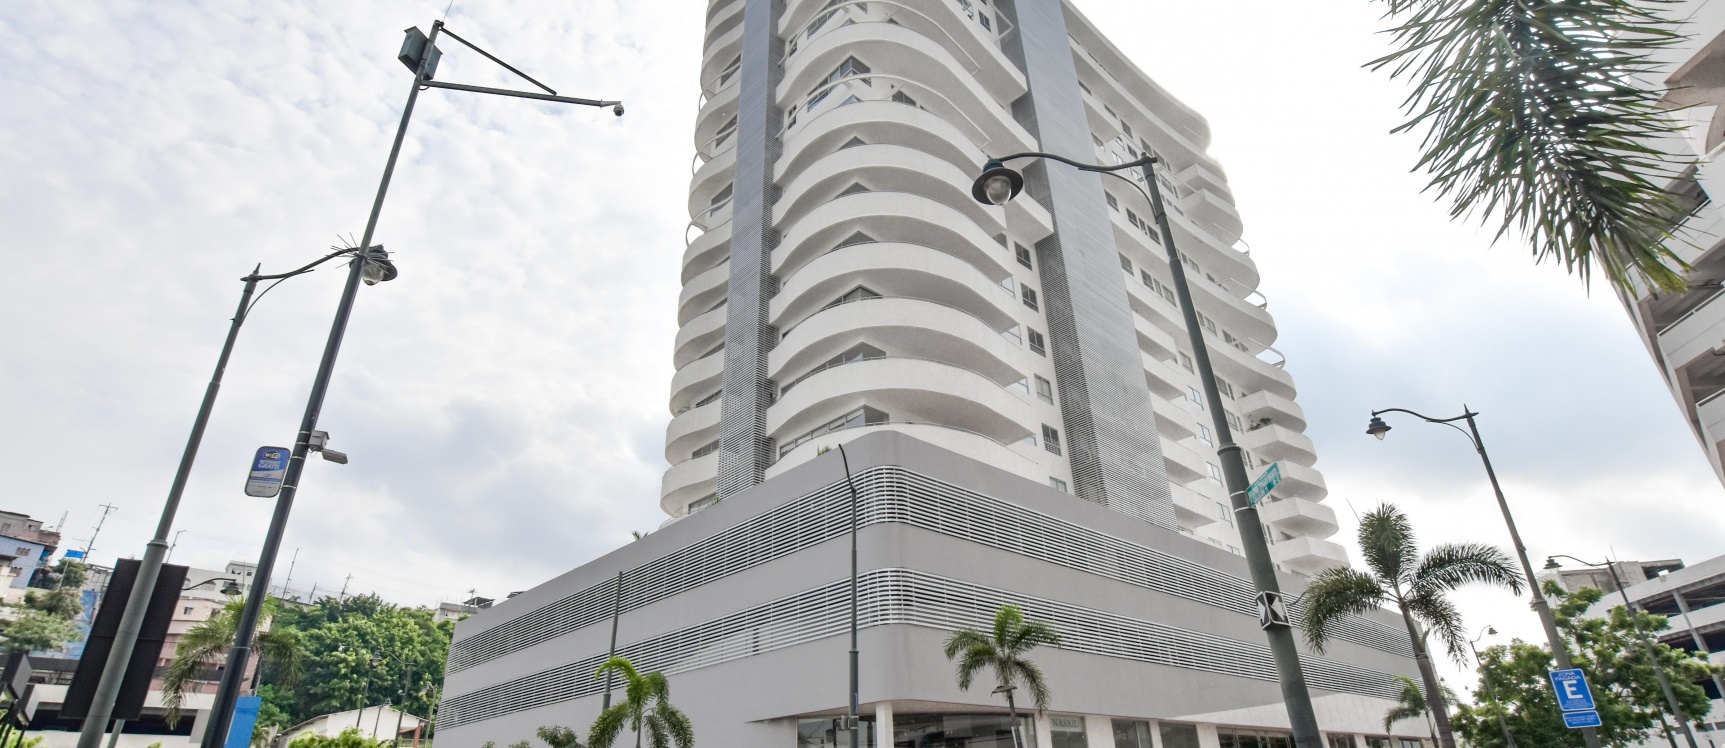 GeoBienes - Suite en renta en Santana Lofts, Puerto Santa Ana - Plusvalia Guayaquil Casas de venta y alquiler Inmobiliaria Ecuador